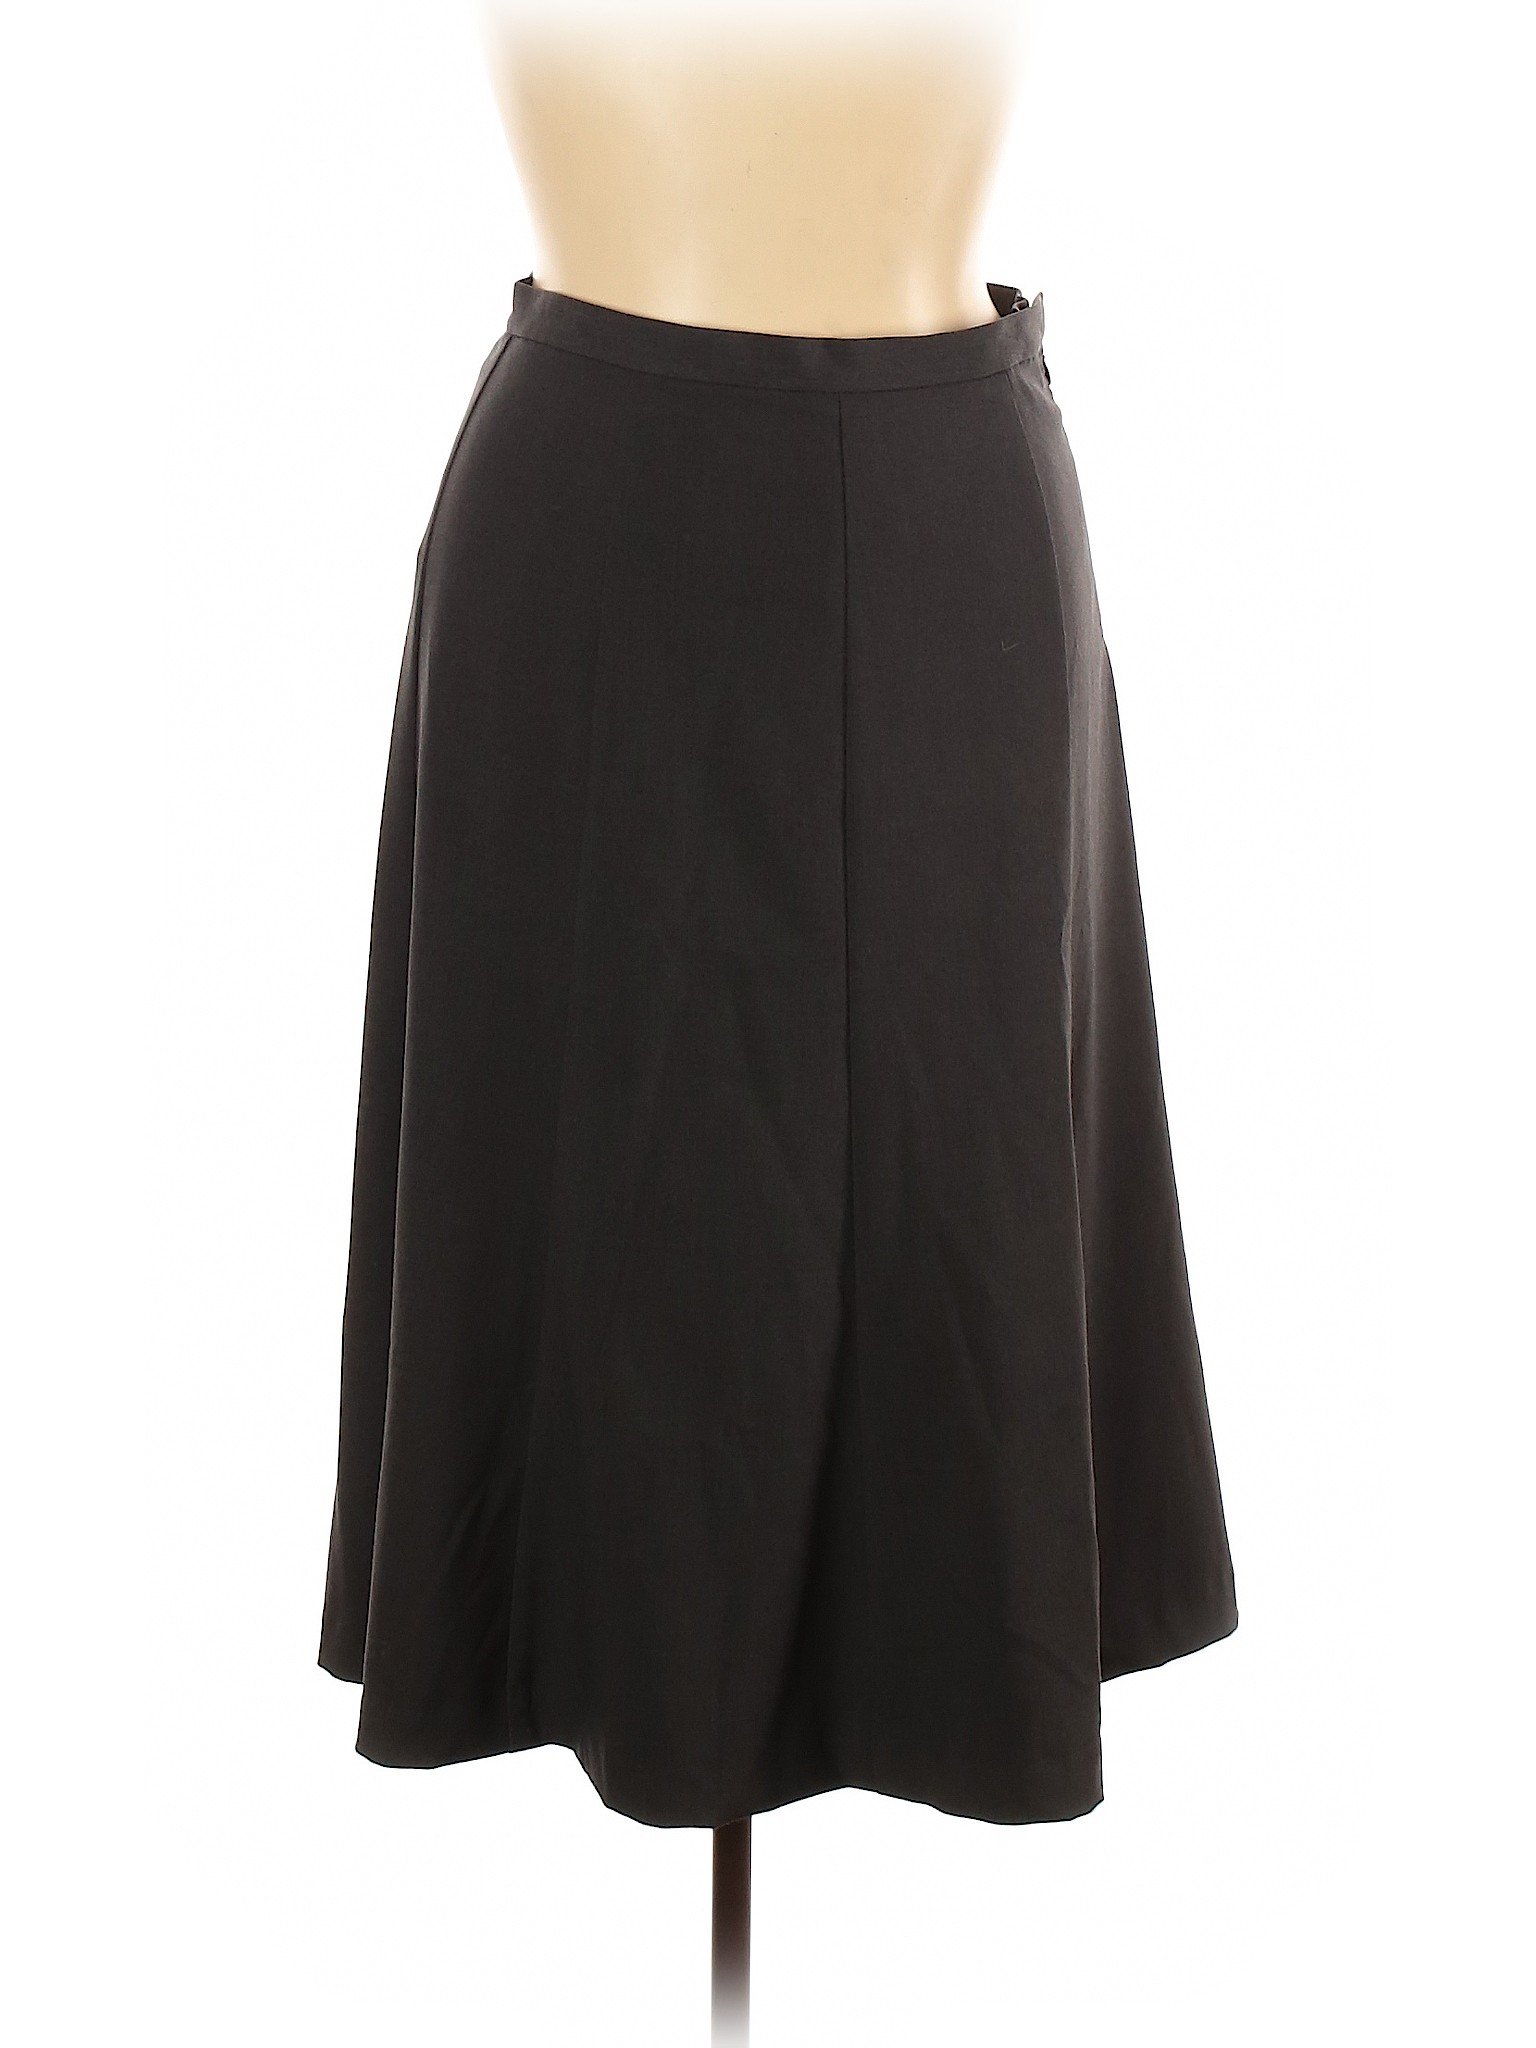 Orvis Women Black Casual Skirt 14 | eBay